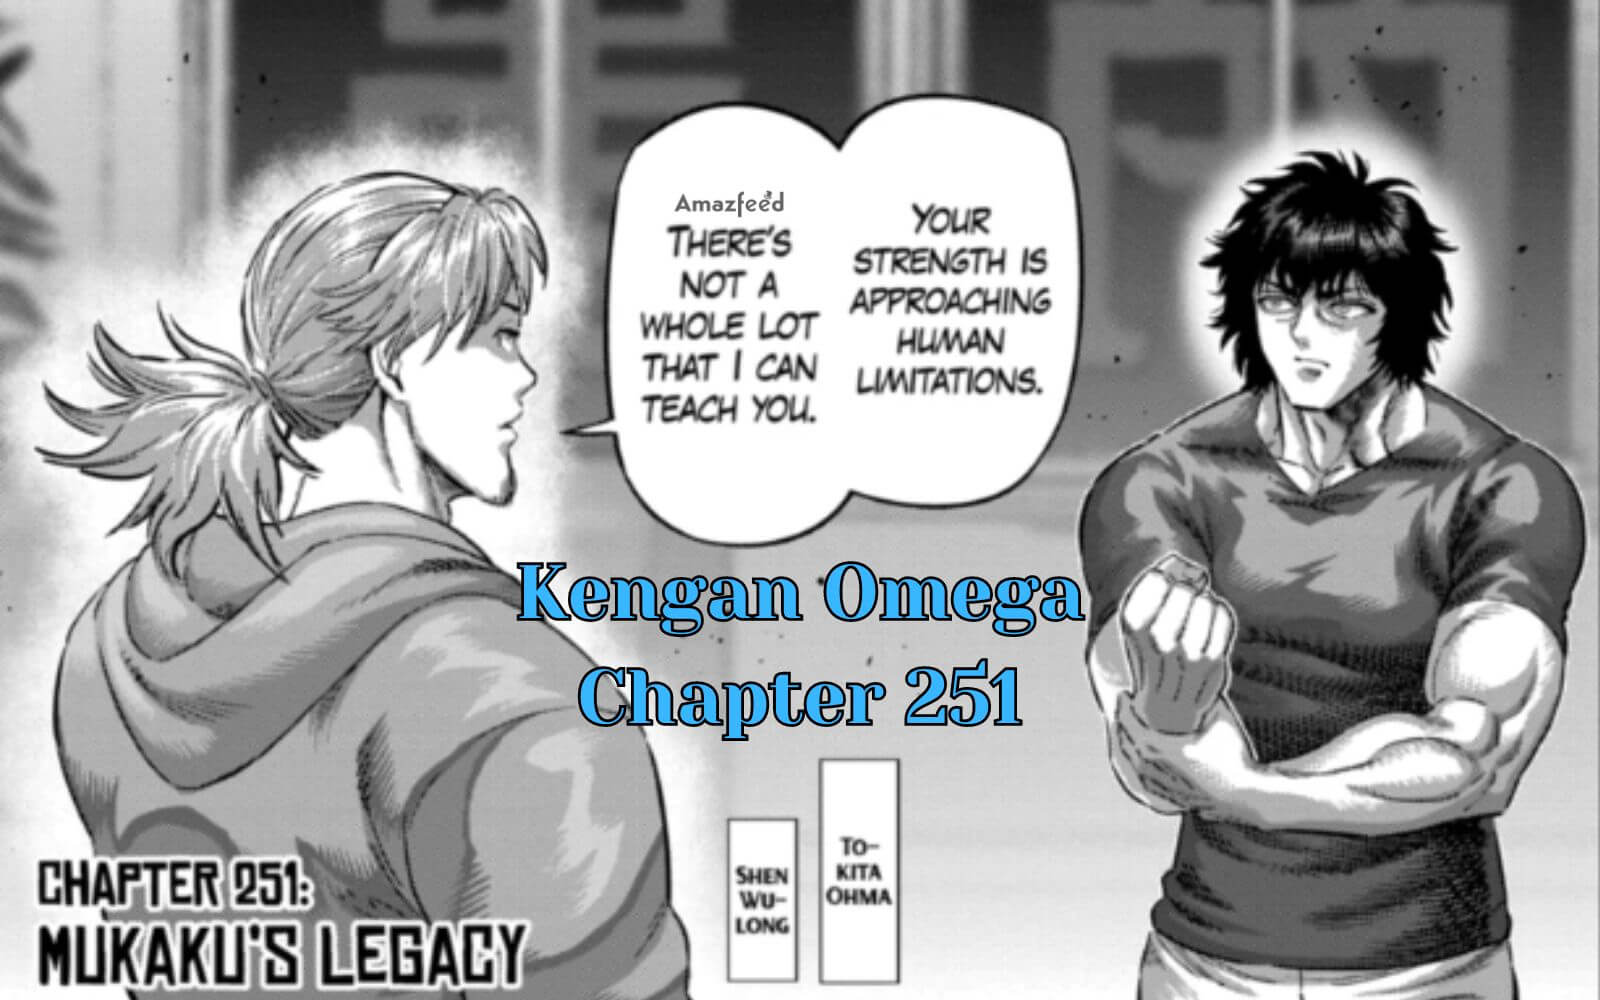 Kengan Omega Chapter 251 Spoiler Alert